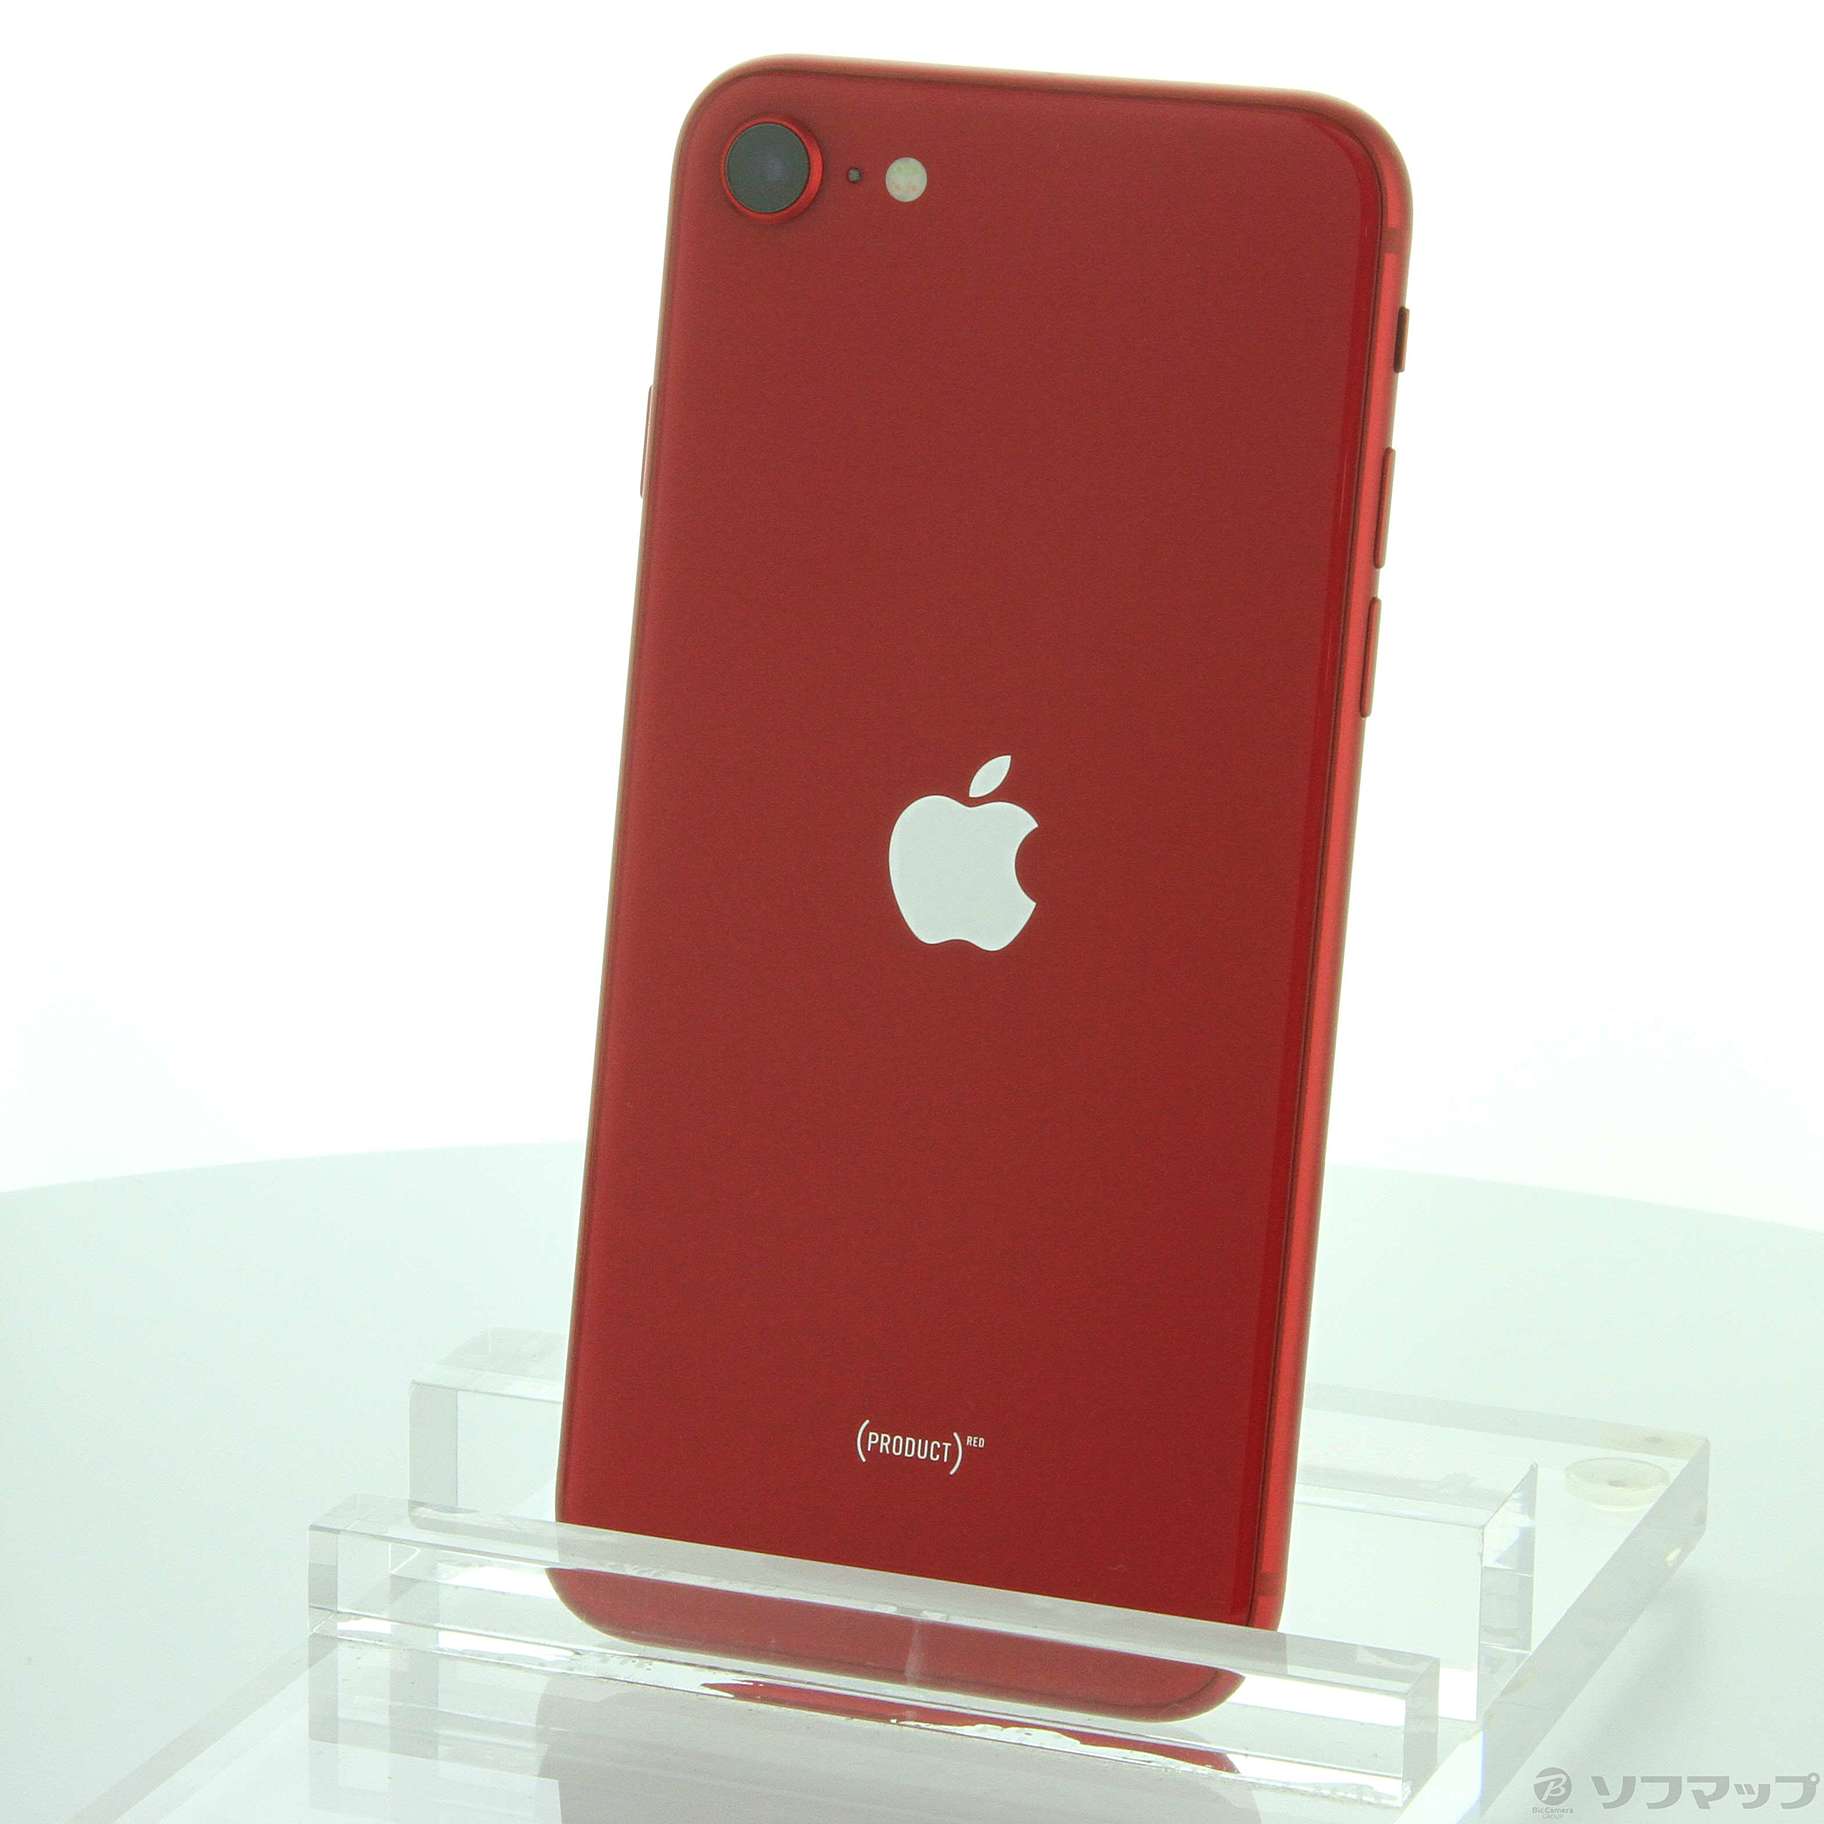 iPhoneSE 第2世代 64GB SIMフリー レッド 赤